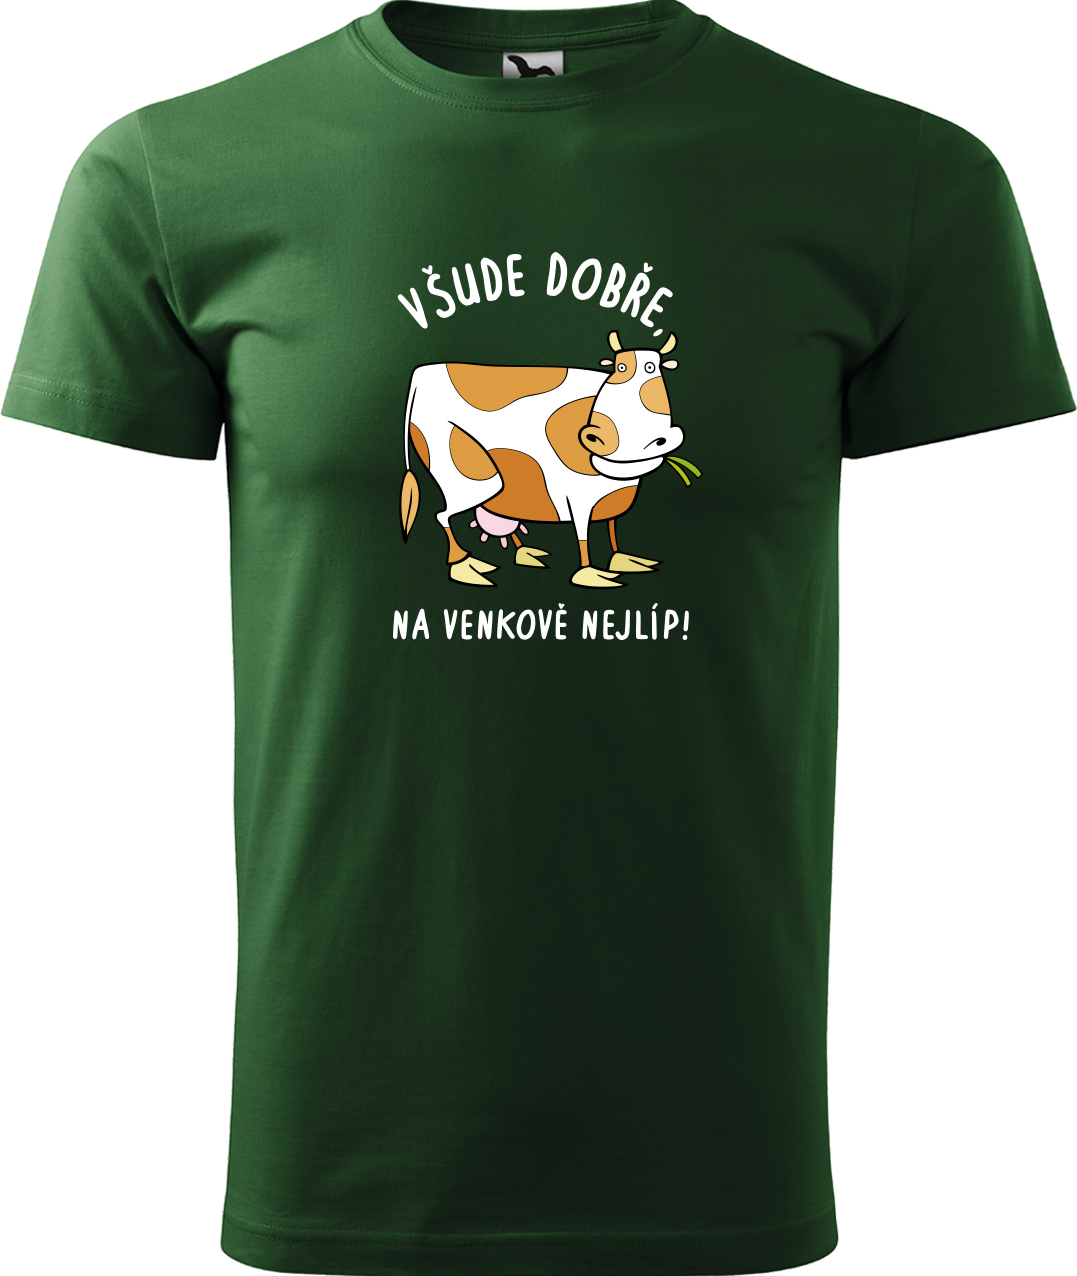 Pánské tričko s krávou - Všude dobře, na venkově nejlíp! Velikost: XL, Barva: Lahvově zelená (06), Střih: pánský